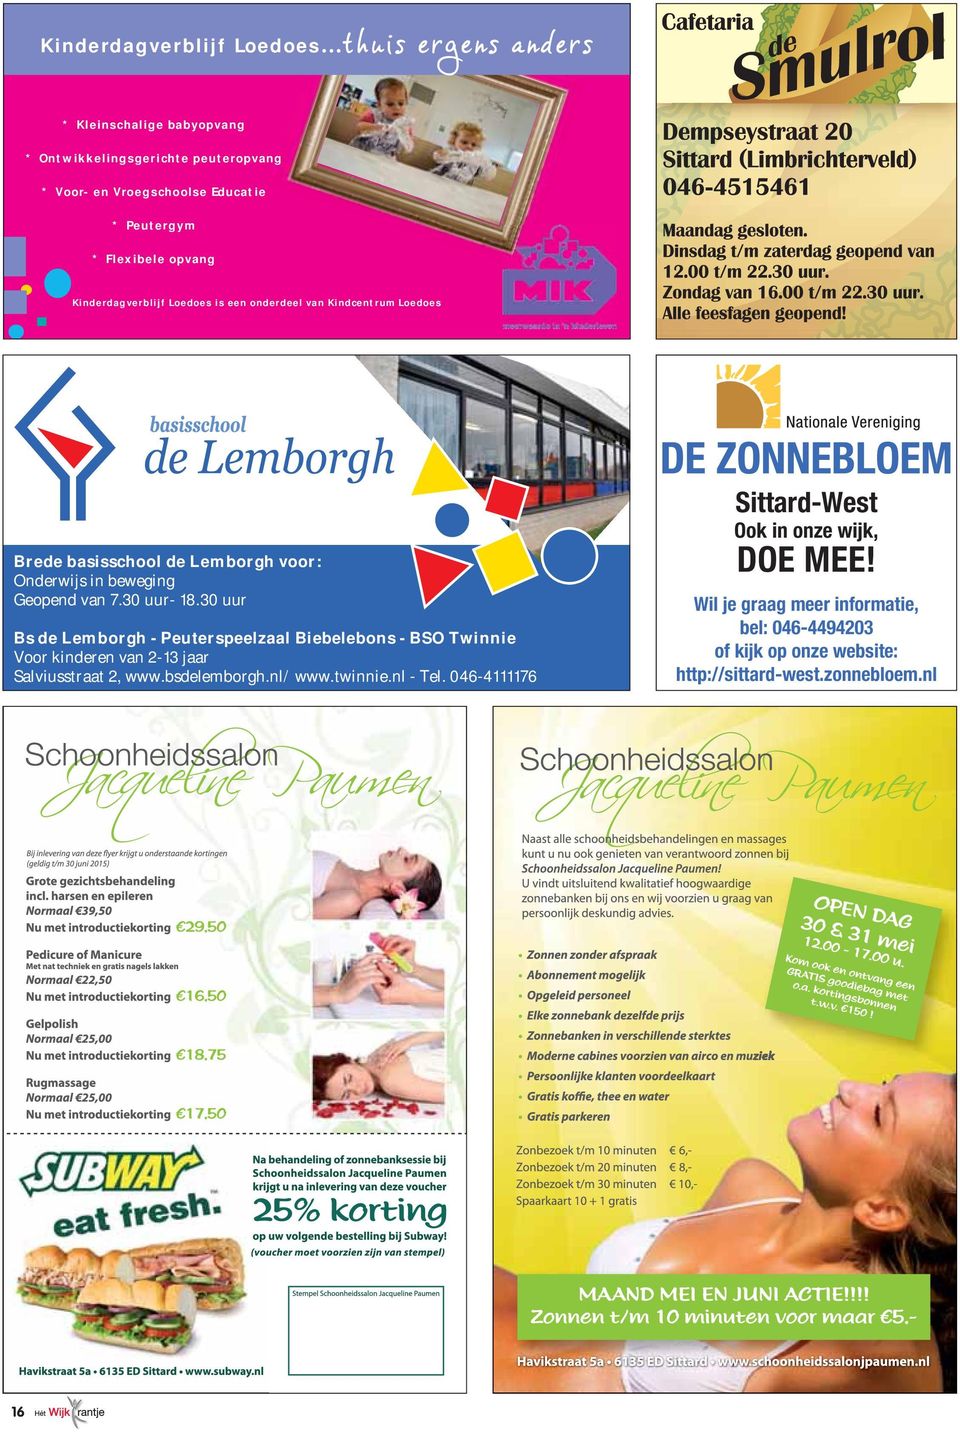 Kinderdagverblijf Loedoes is een onderdeel van Kindcentrum Loedoes Brede basisschool de Lemborgh voor: Onderwijs in beweging Geopend van 7.30 uur- 18.